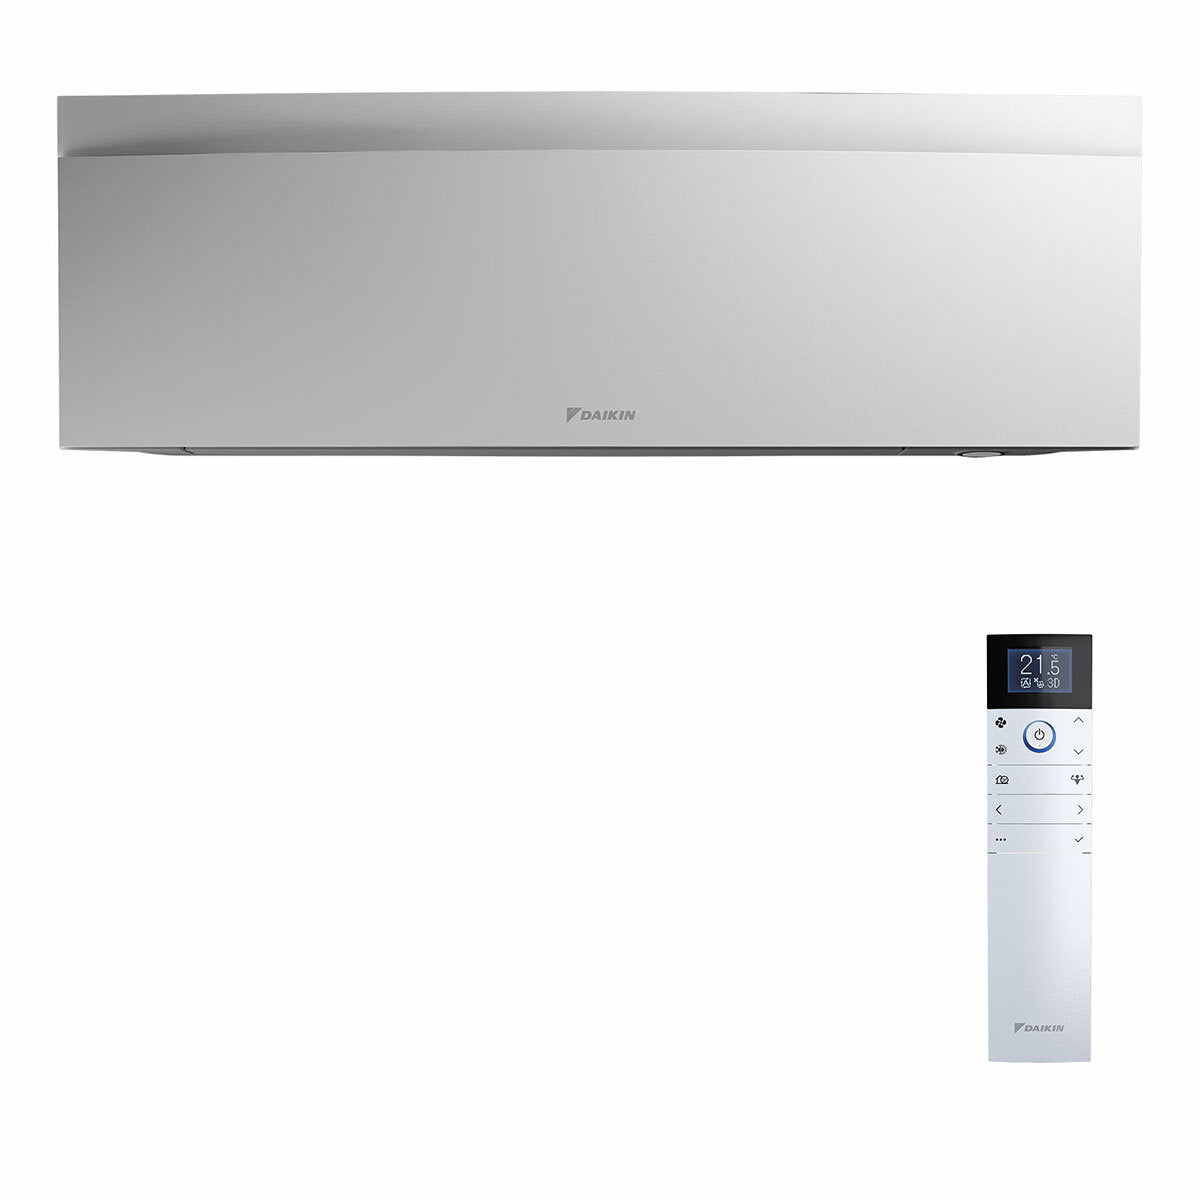 Daikin Emura air conditioner 3 split panels 9000+9000+12000+18000 BTU inverter A++ wifi outdoor unit 7.4 kW White